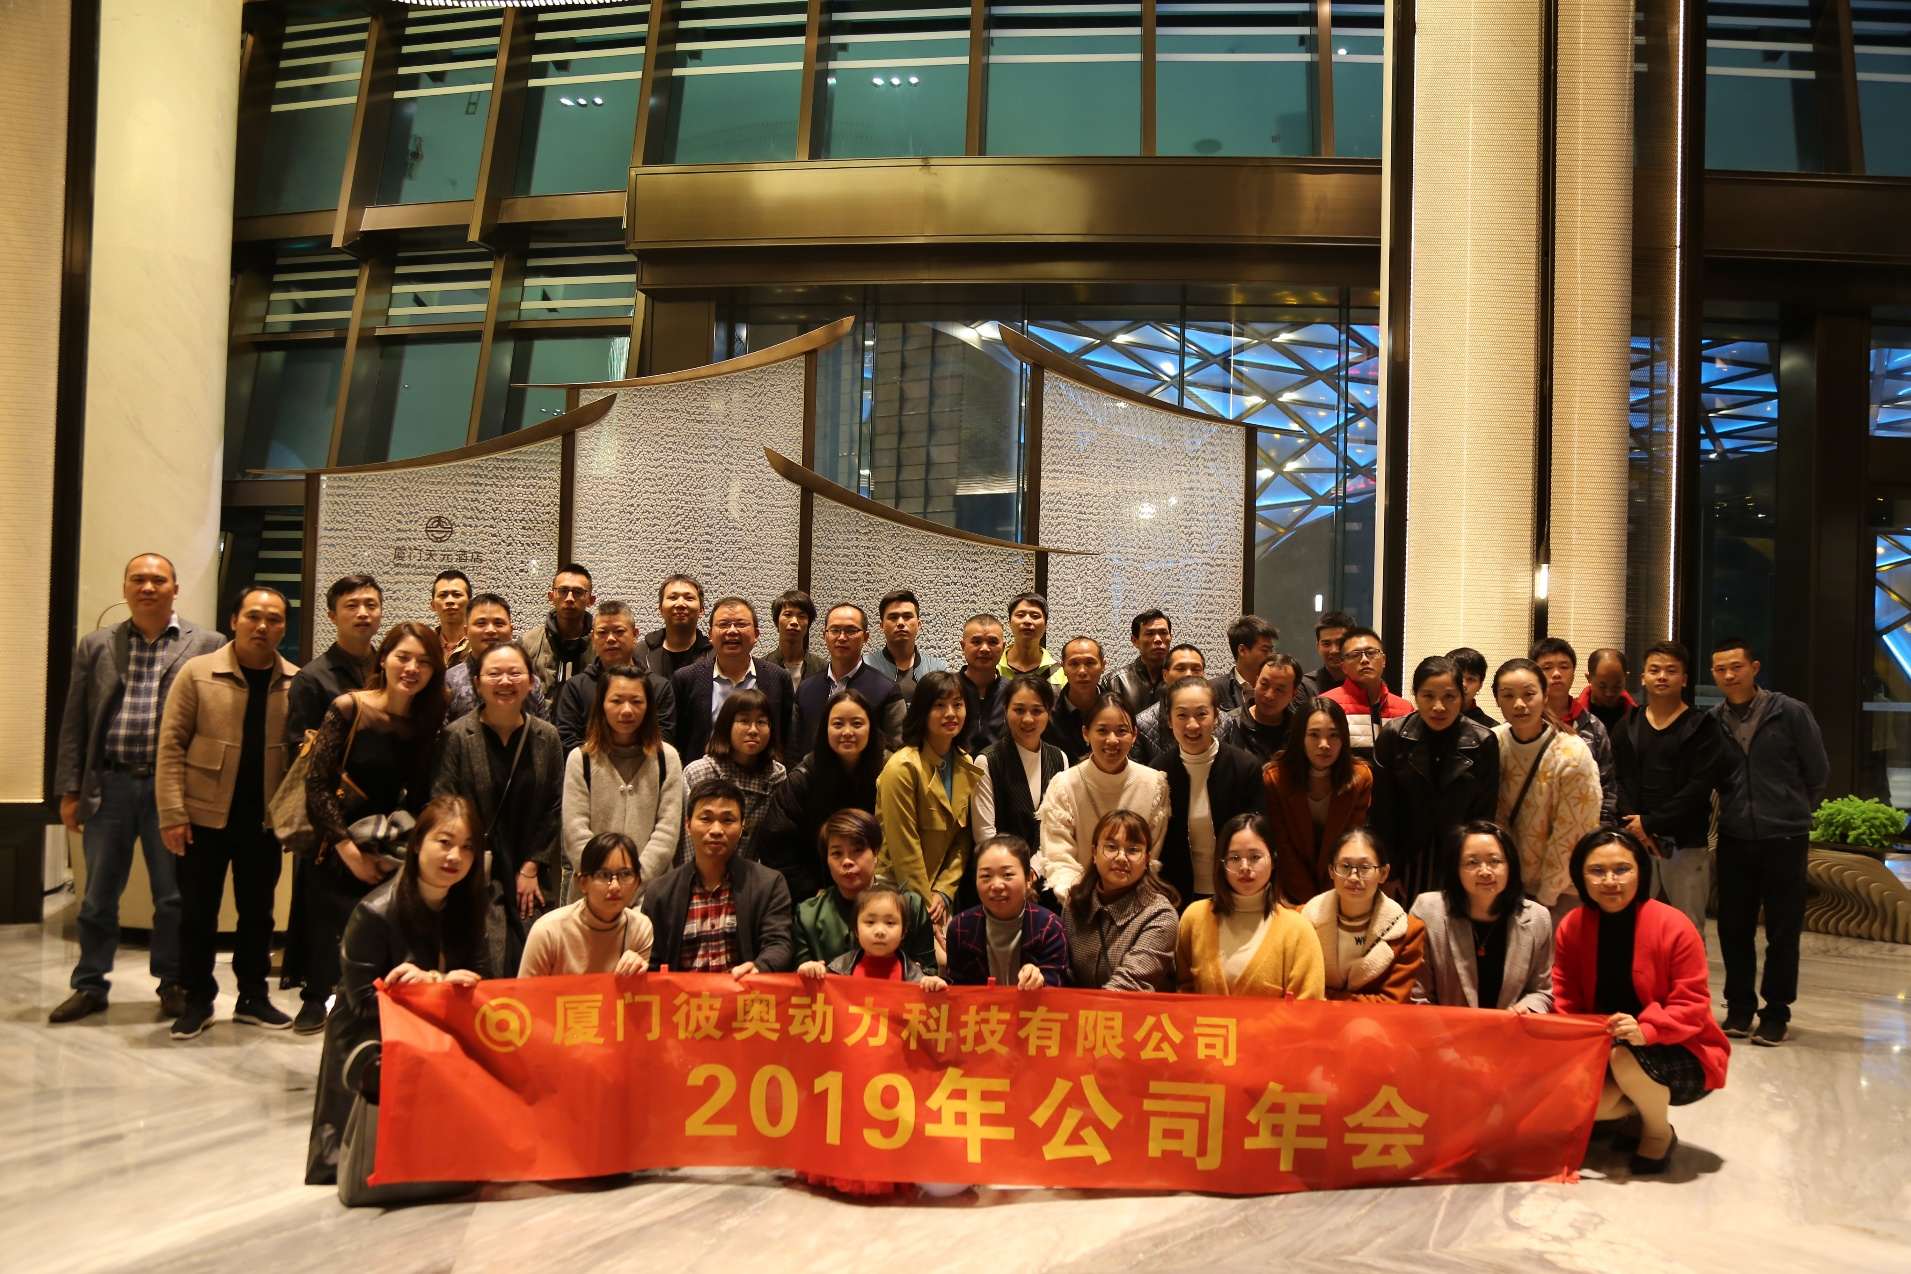 cohesión y unidad para un futuro en el que todos salgan ganando — informe de la fiesta de fin de año de biao power 2019